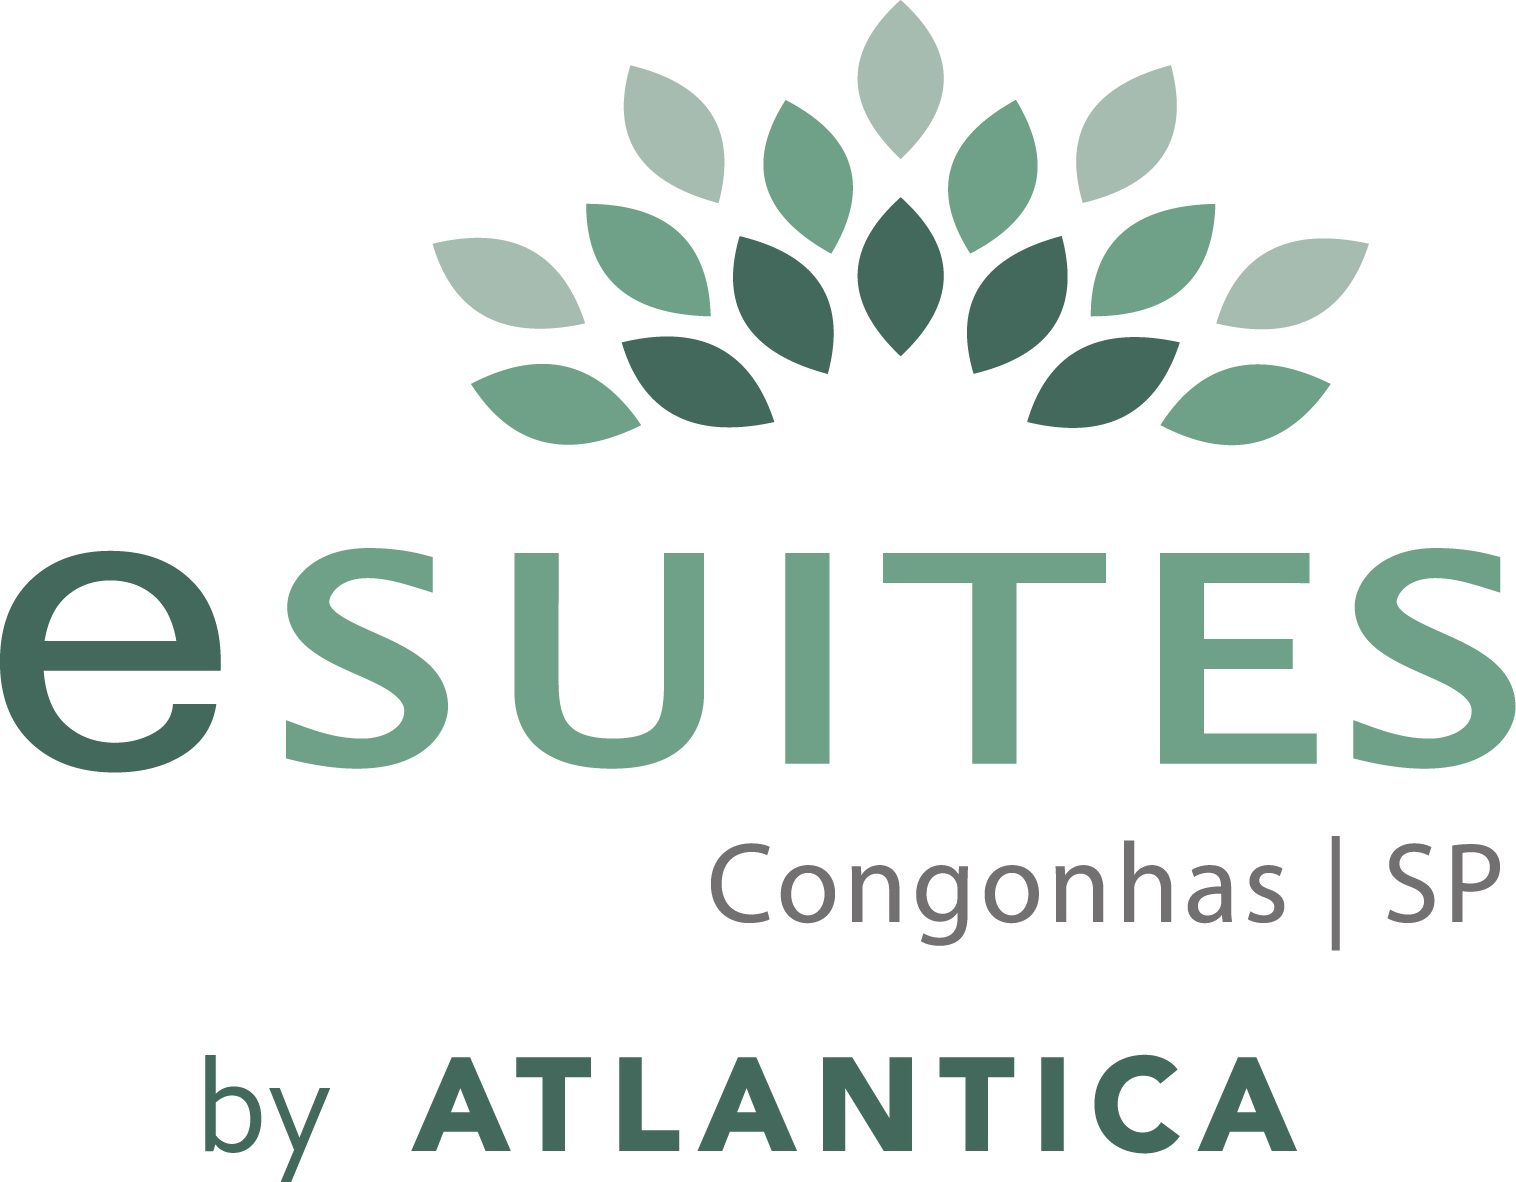 eSuites Congonhas by Atlantica – Mega Artesanal 2022